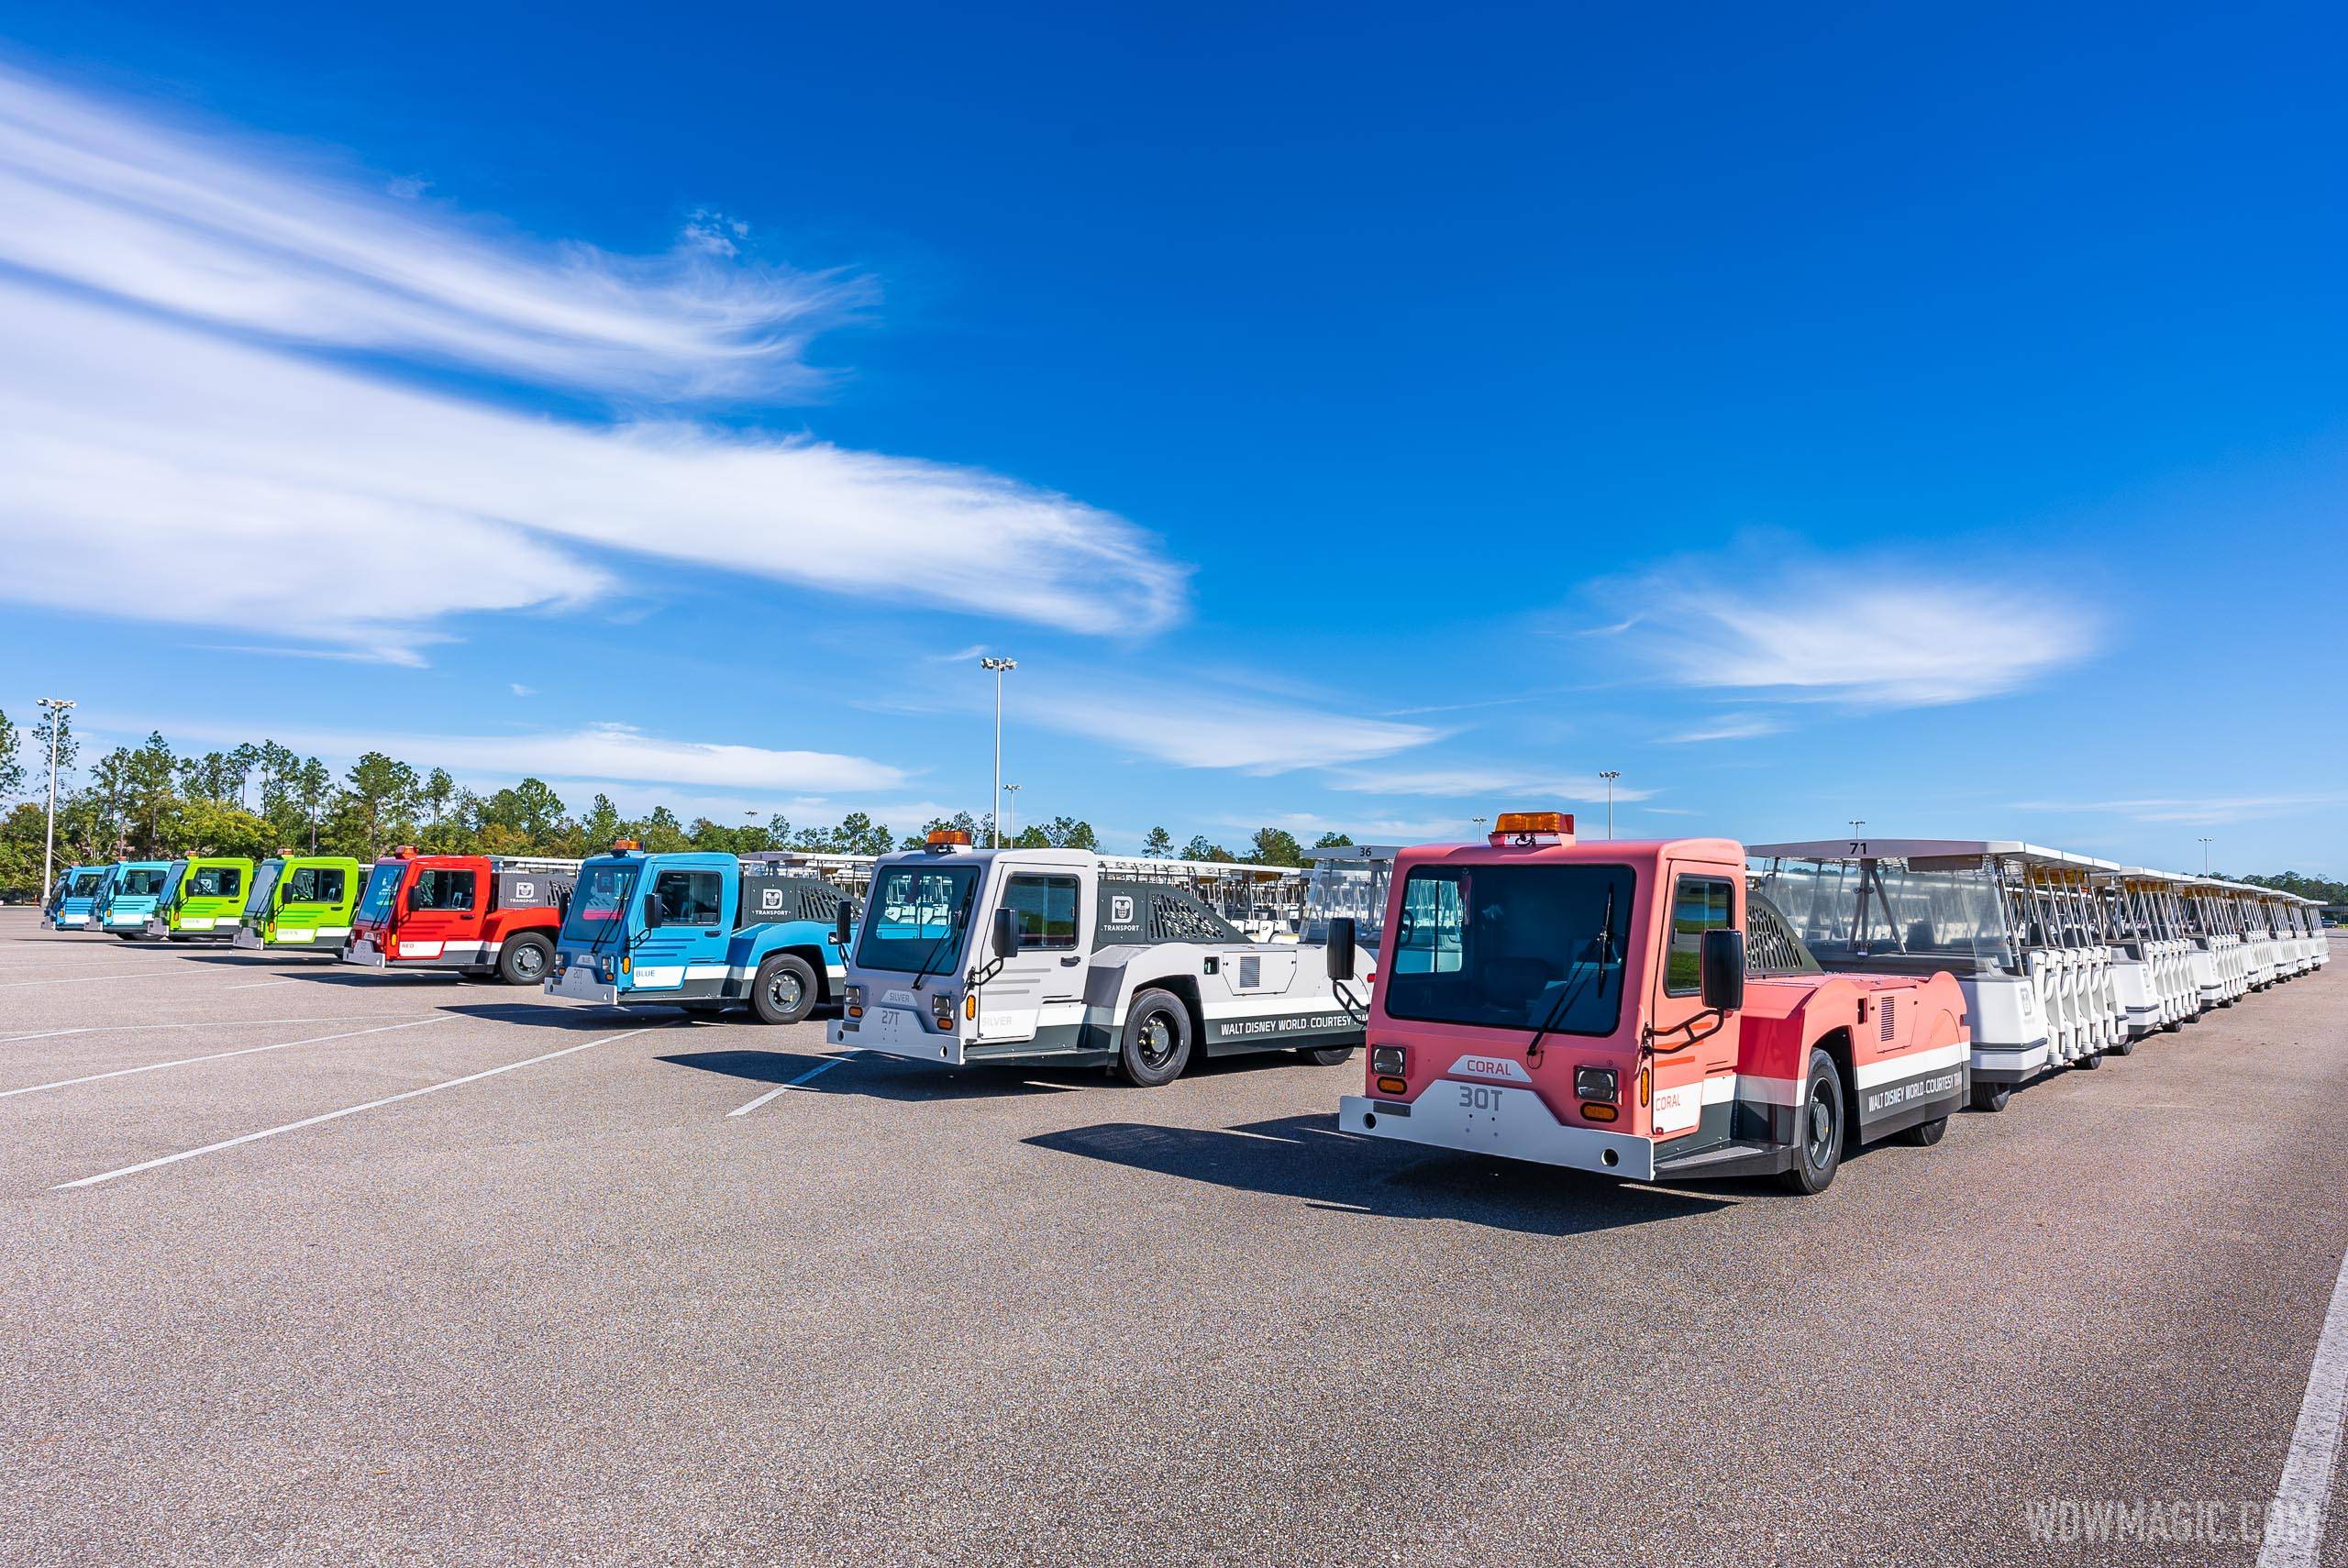 TTC Magic Kingdom Parking Lot Trams December 2020